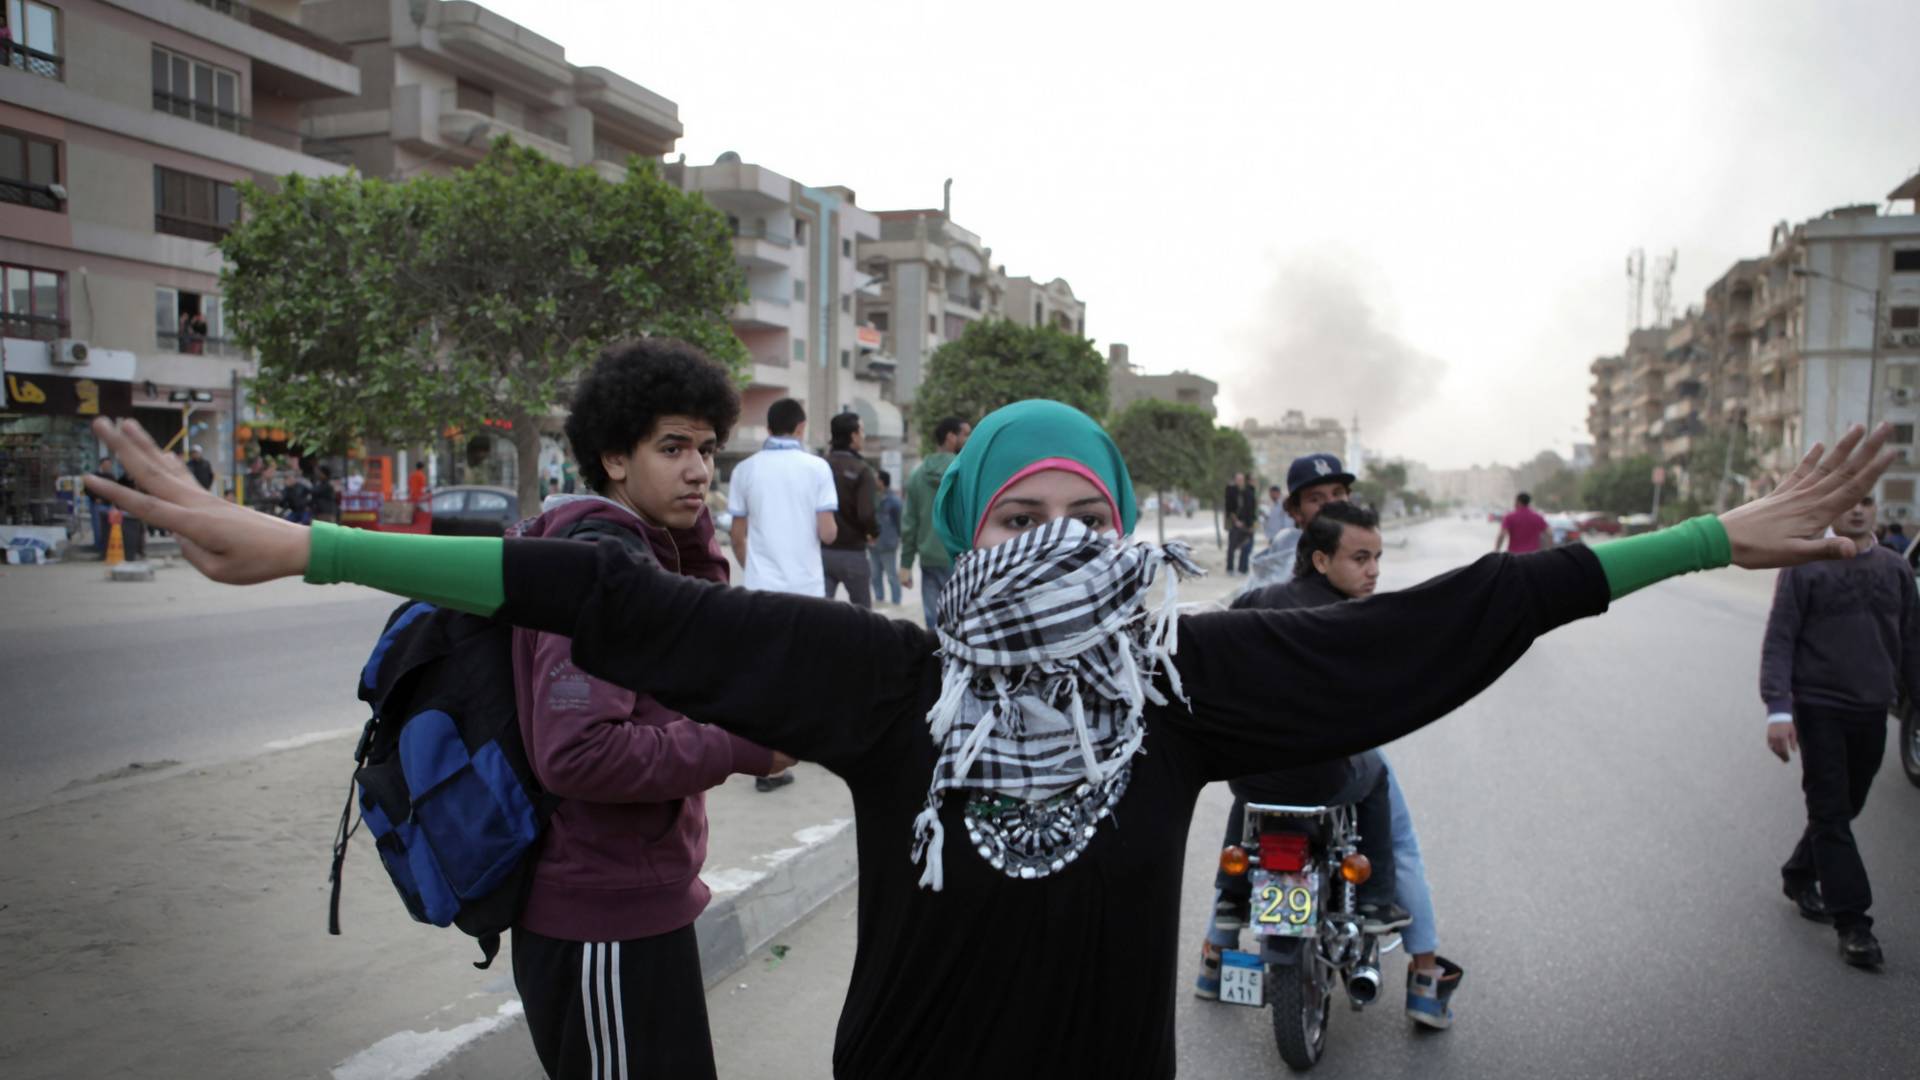 Egipt aresztuje aktywistów walczących o prawa kobiet. "Twoje życie zostanie zniszczone"